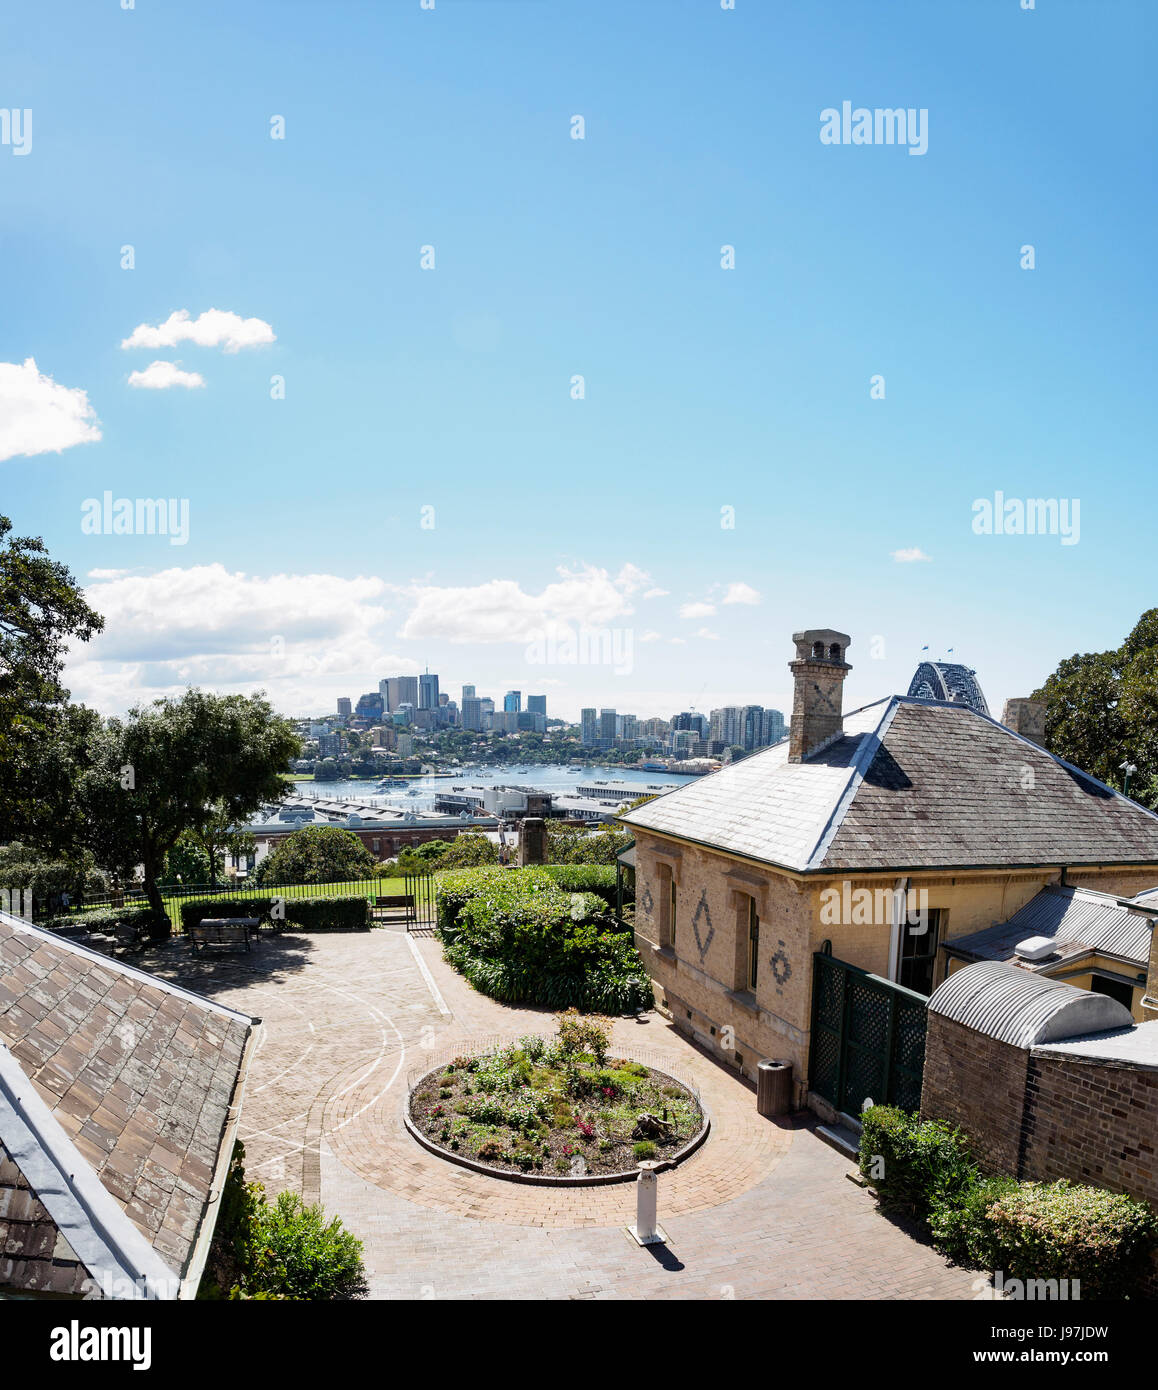 L'Australie, New South Wales, Sydney, cour intérieure de la maison avec la ville en arrière-plan Banque D'Images